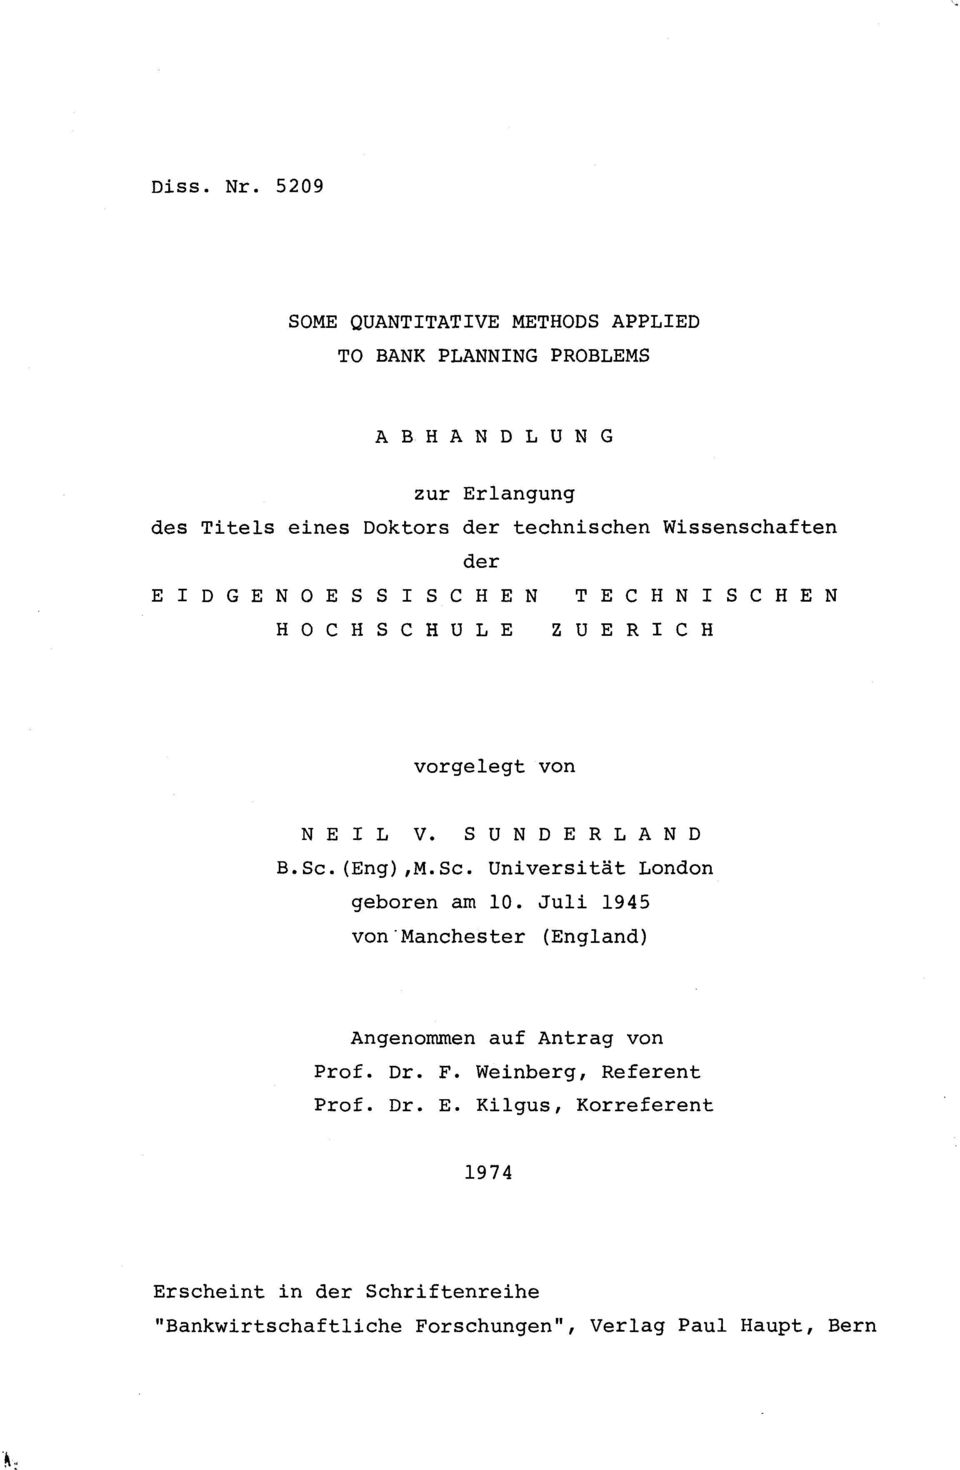 technischen Wissenschaften der EIDGENOESSISCHEN HOCHSCHULE TECHNISCHEN ZUERICH vorgelegt von NEIL V. SUNDERLAND B.Sc.